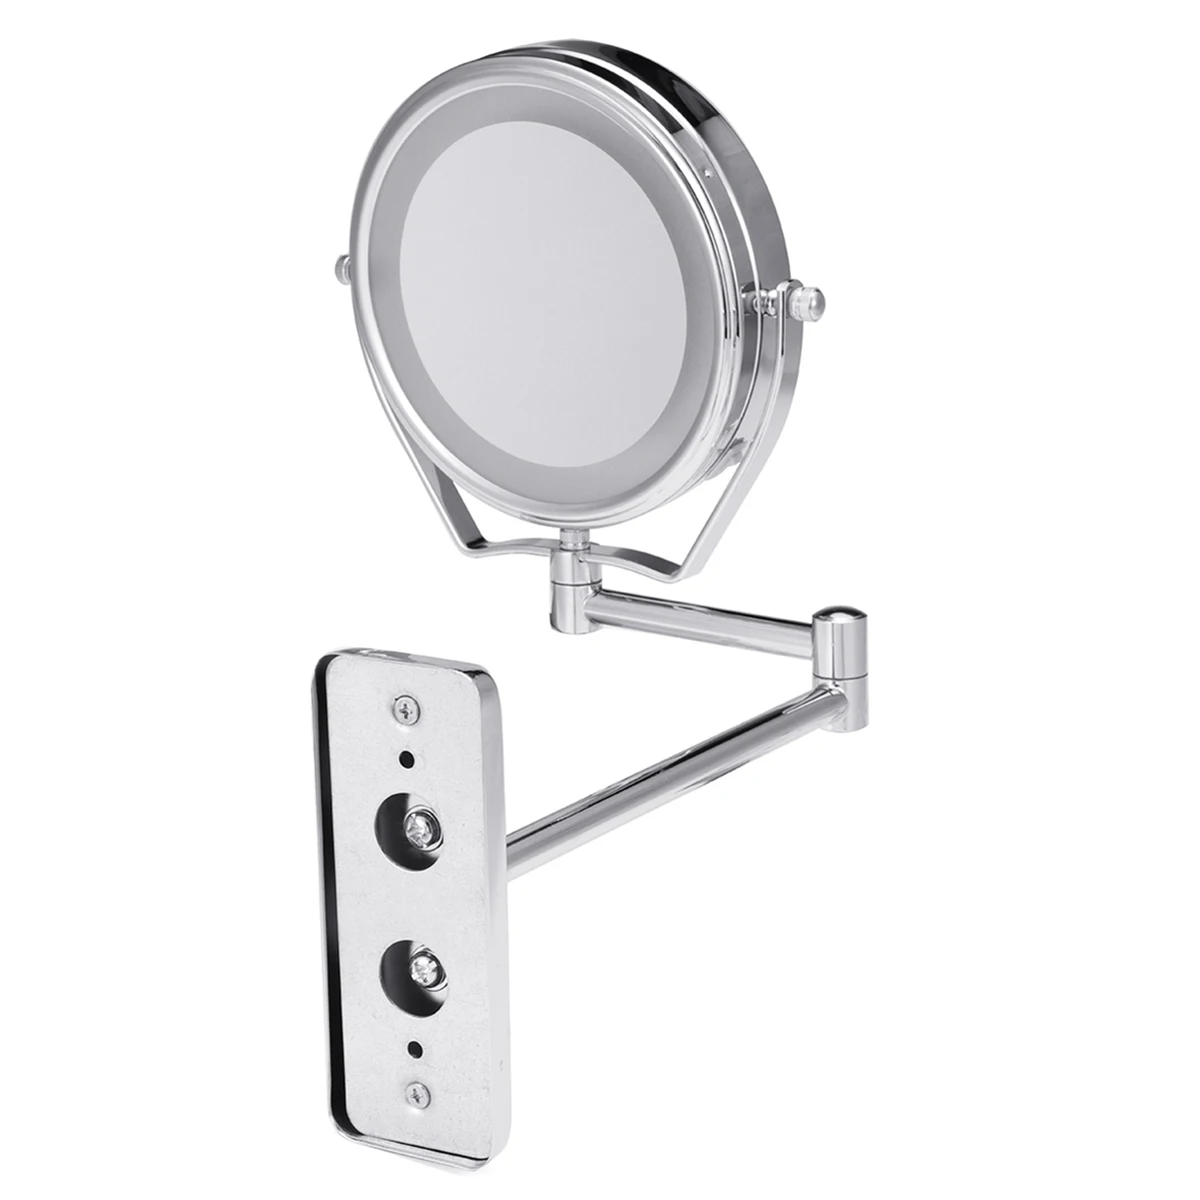 6 дюймов 1X/7X двухстороннее зеркало для бритья для ванной Led косметическое зеркало для макияжа регулируемый настенный двойной с удлиняемым кронштейном